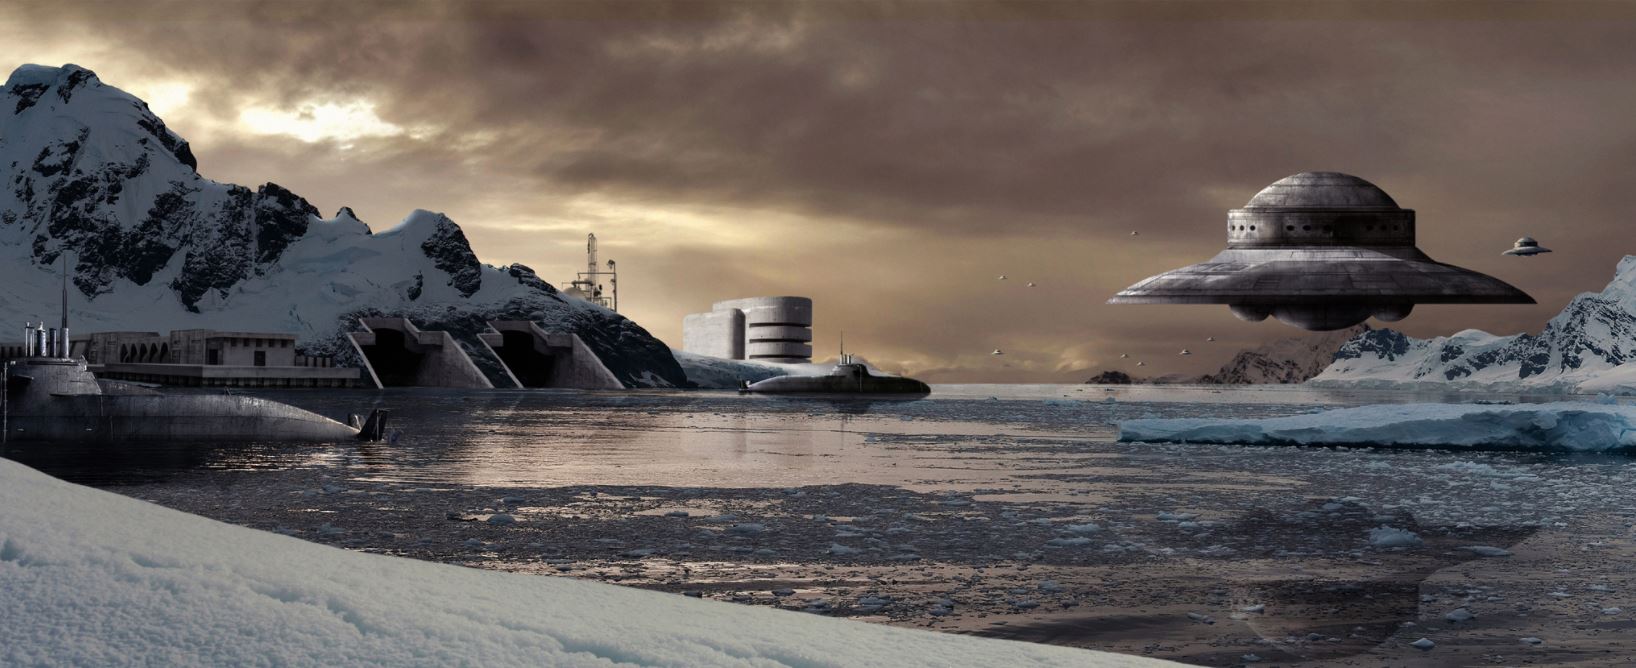 antarctica-ufo.jpg